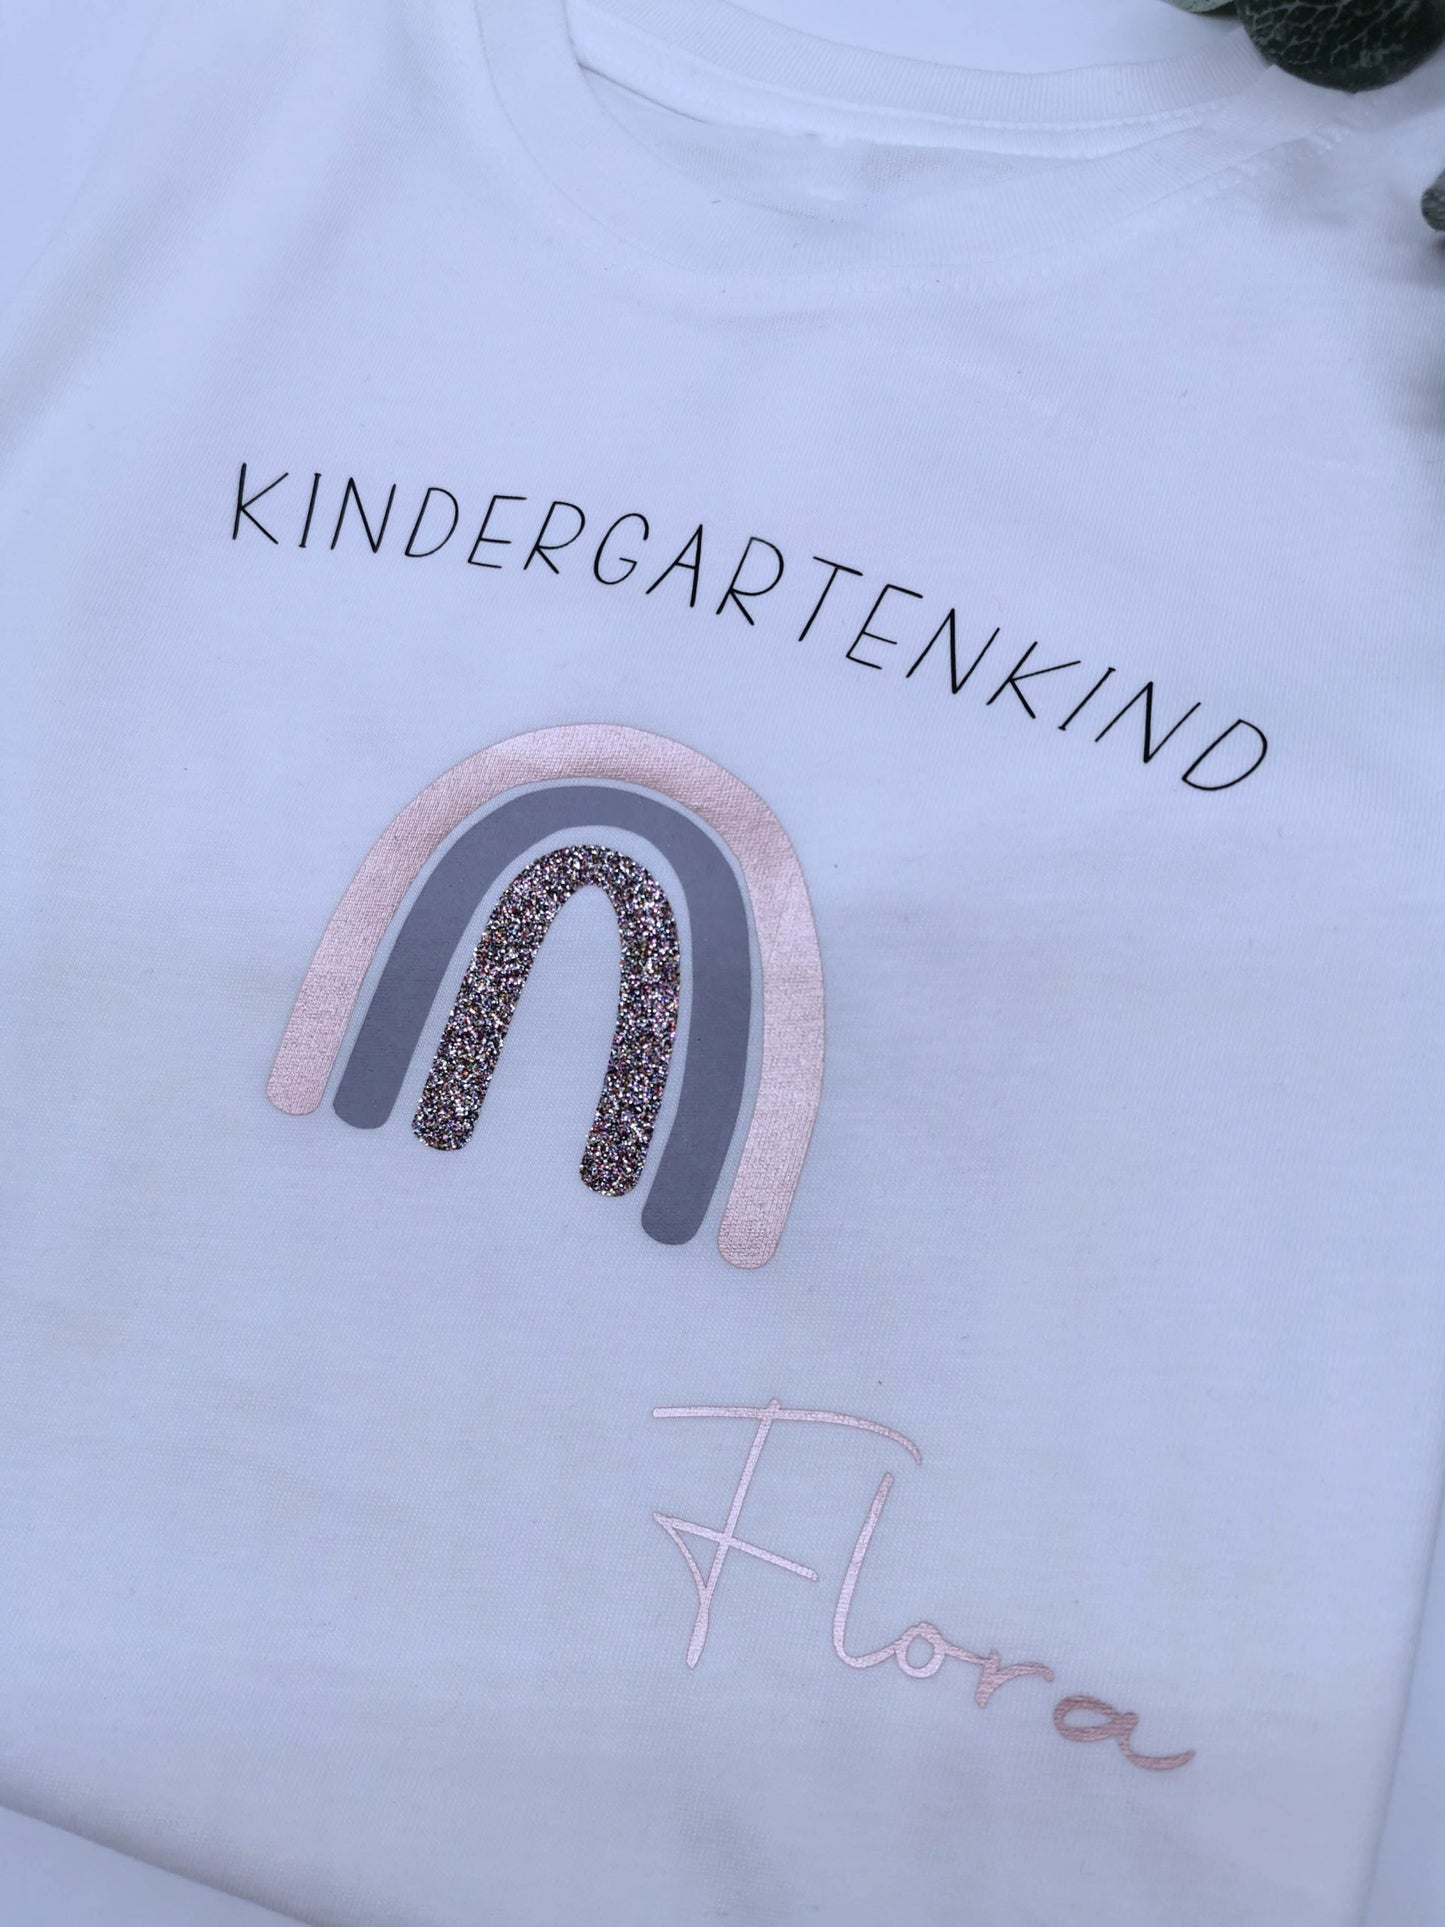 School/kindergarten kid shirt